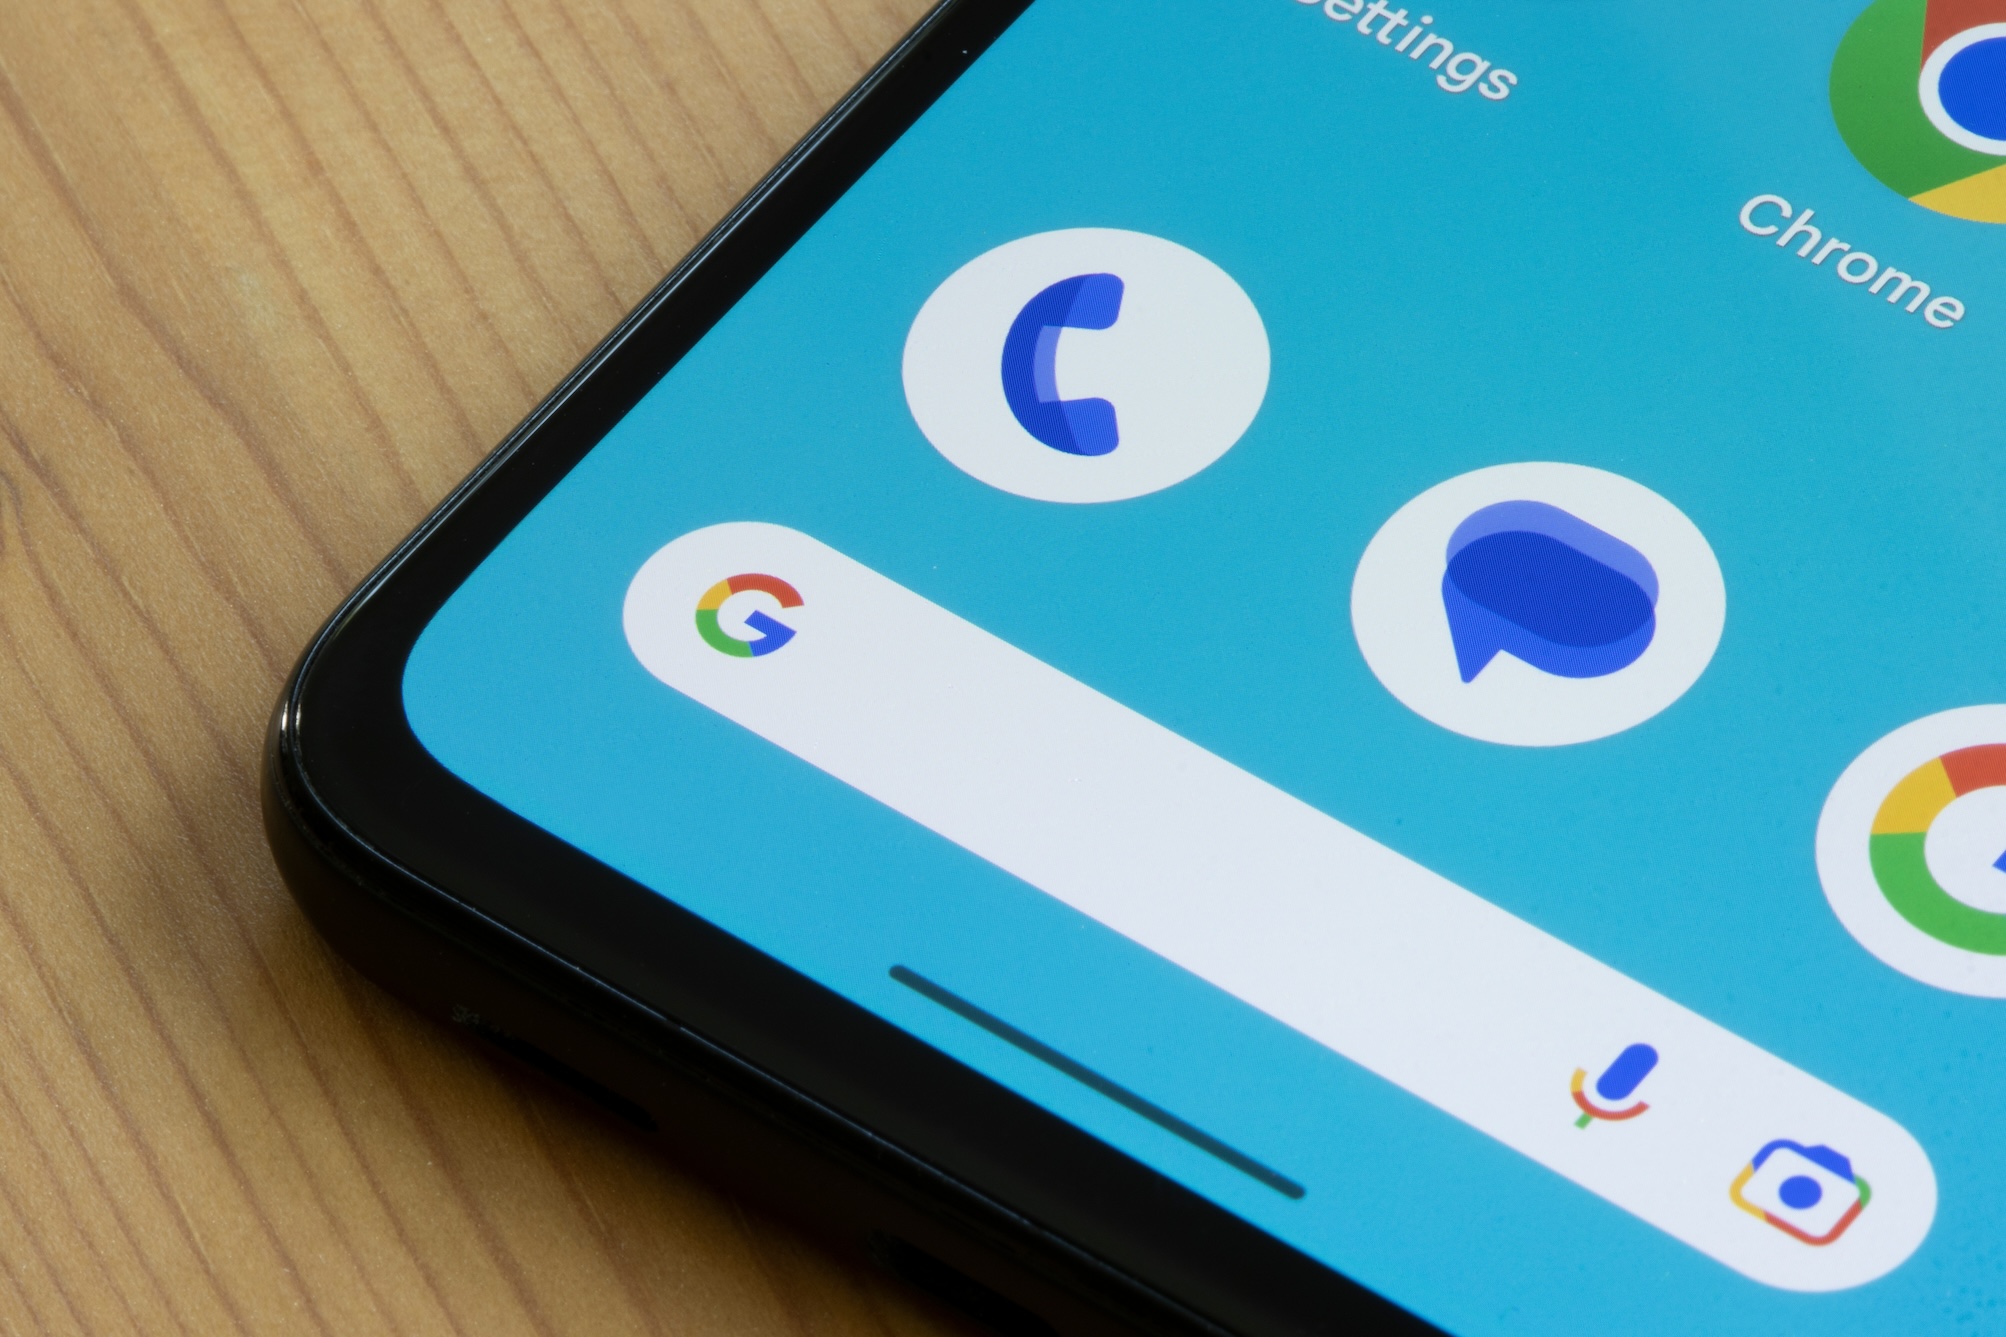 Google Messages s'attaque à l'élégance d'iMessage et devient beaucoup plus coloré et animé